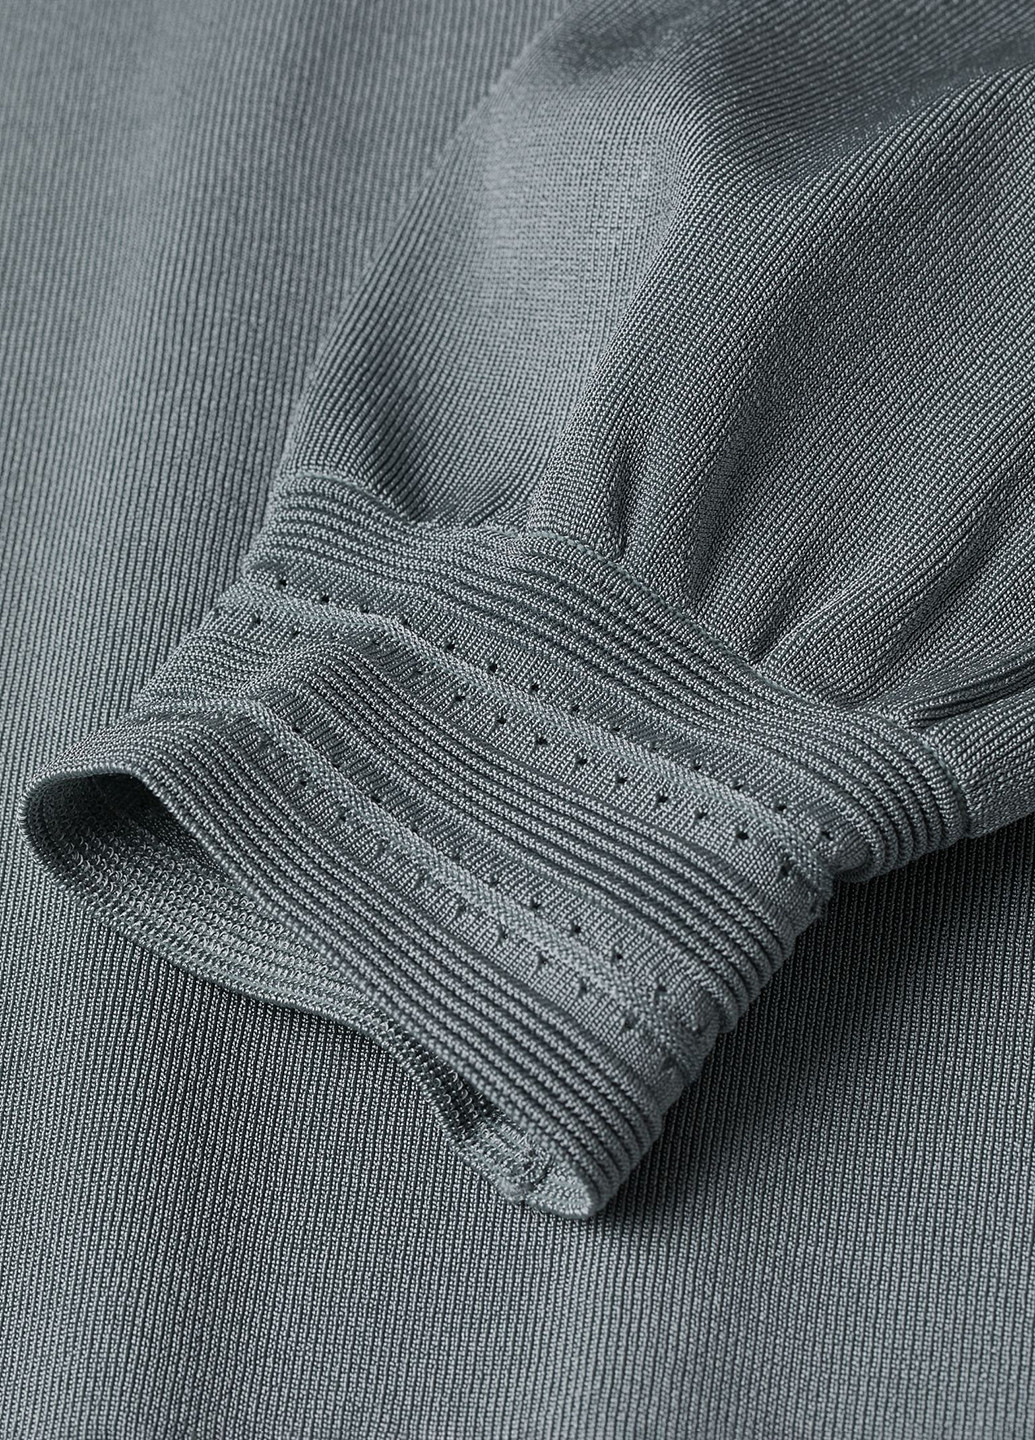 Бирюзовый демисезонный свитер джемпер H&M